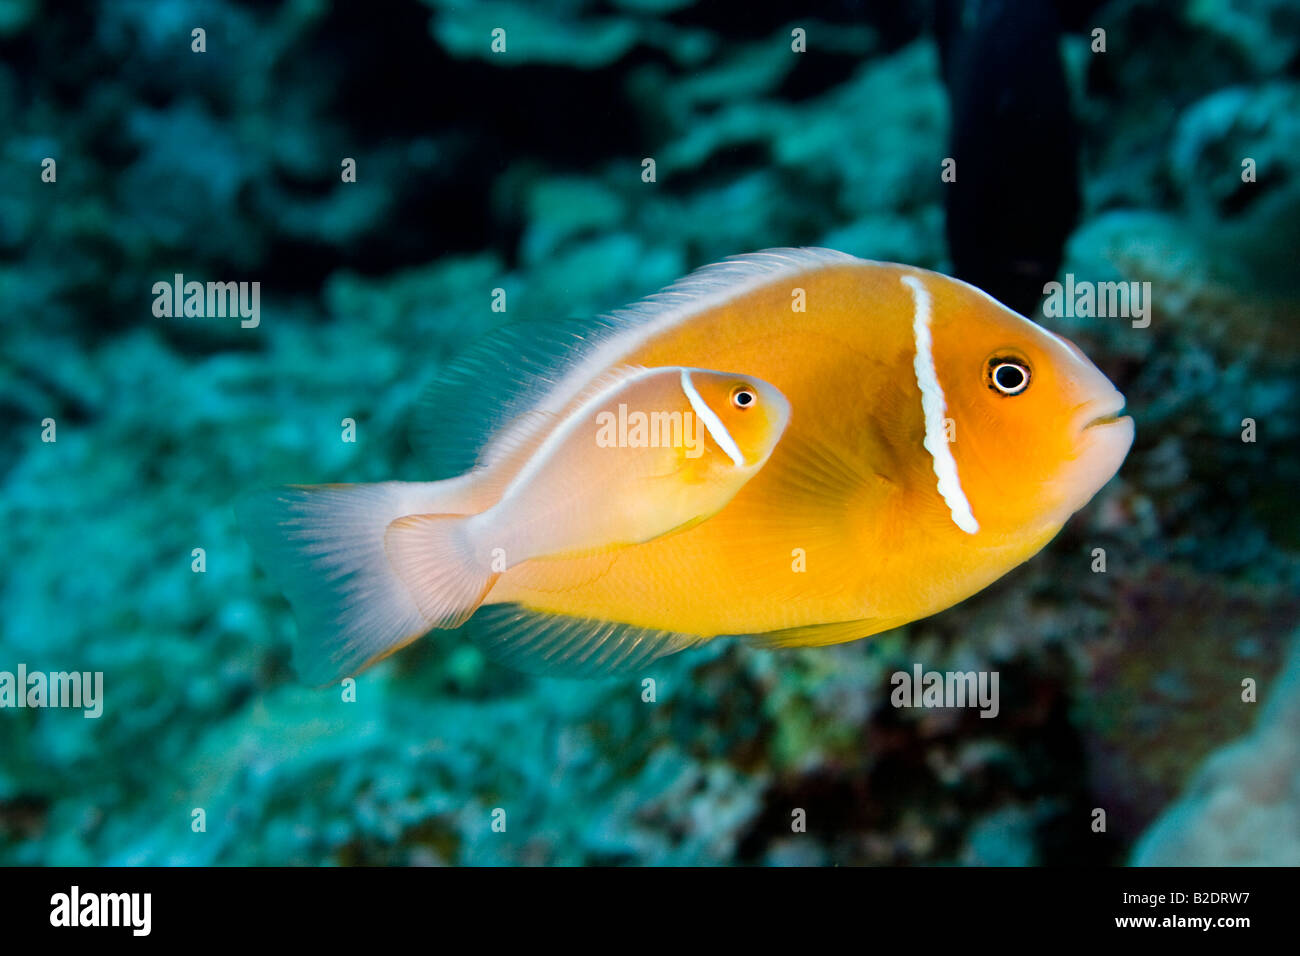 Ce poisson clown Amphiprion perideraion, commune, se trouve le plus souvent, l'anémone Heteractis magnifica, Yap, Micronésie. Banque D'Images